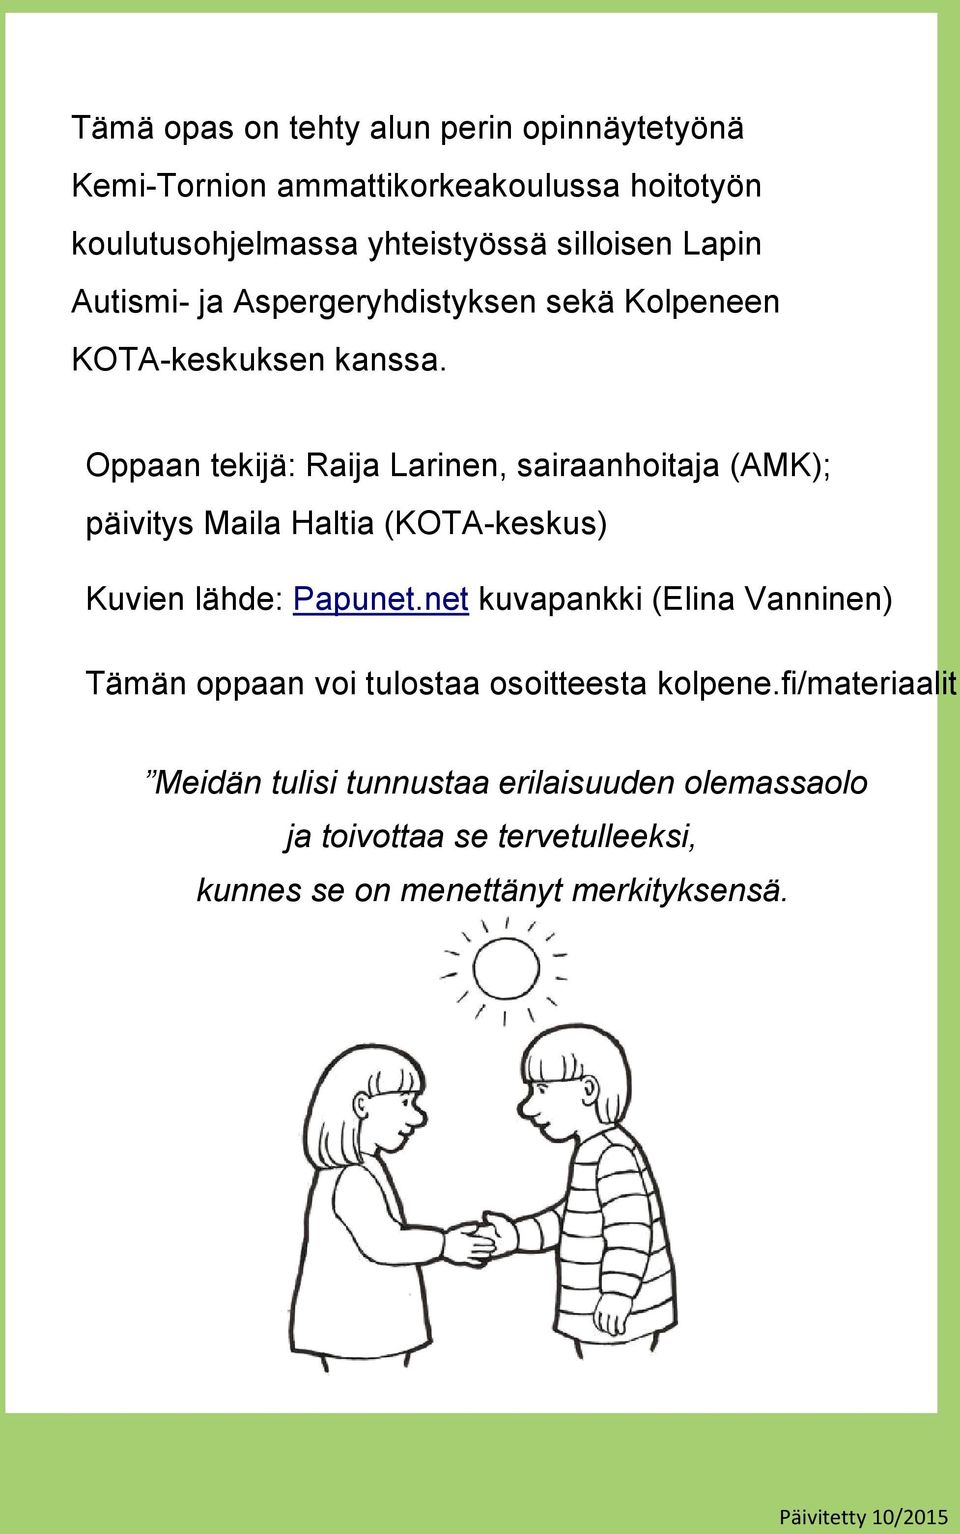 Oppaan tekijä: Raija Larinen, sairaanhoitaja (AMK); päivitys Maila Haltia (KOTA-keskus) Kuvien lähde: Papunet.